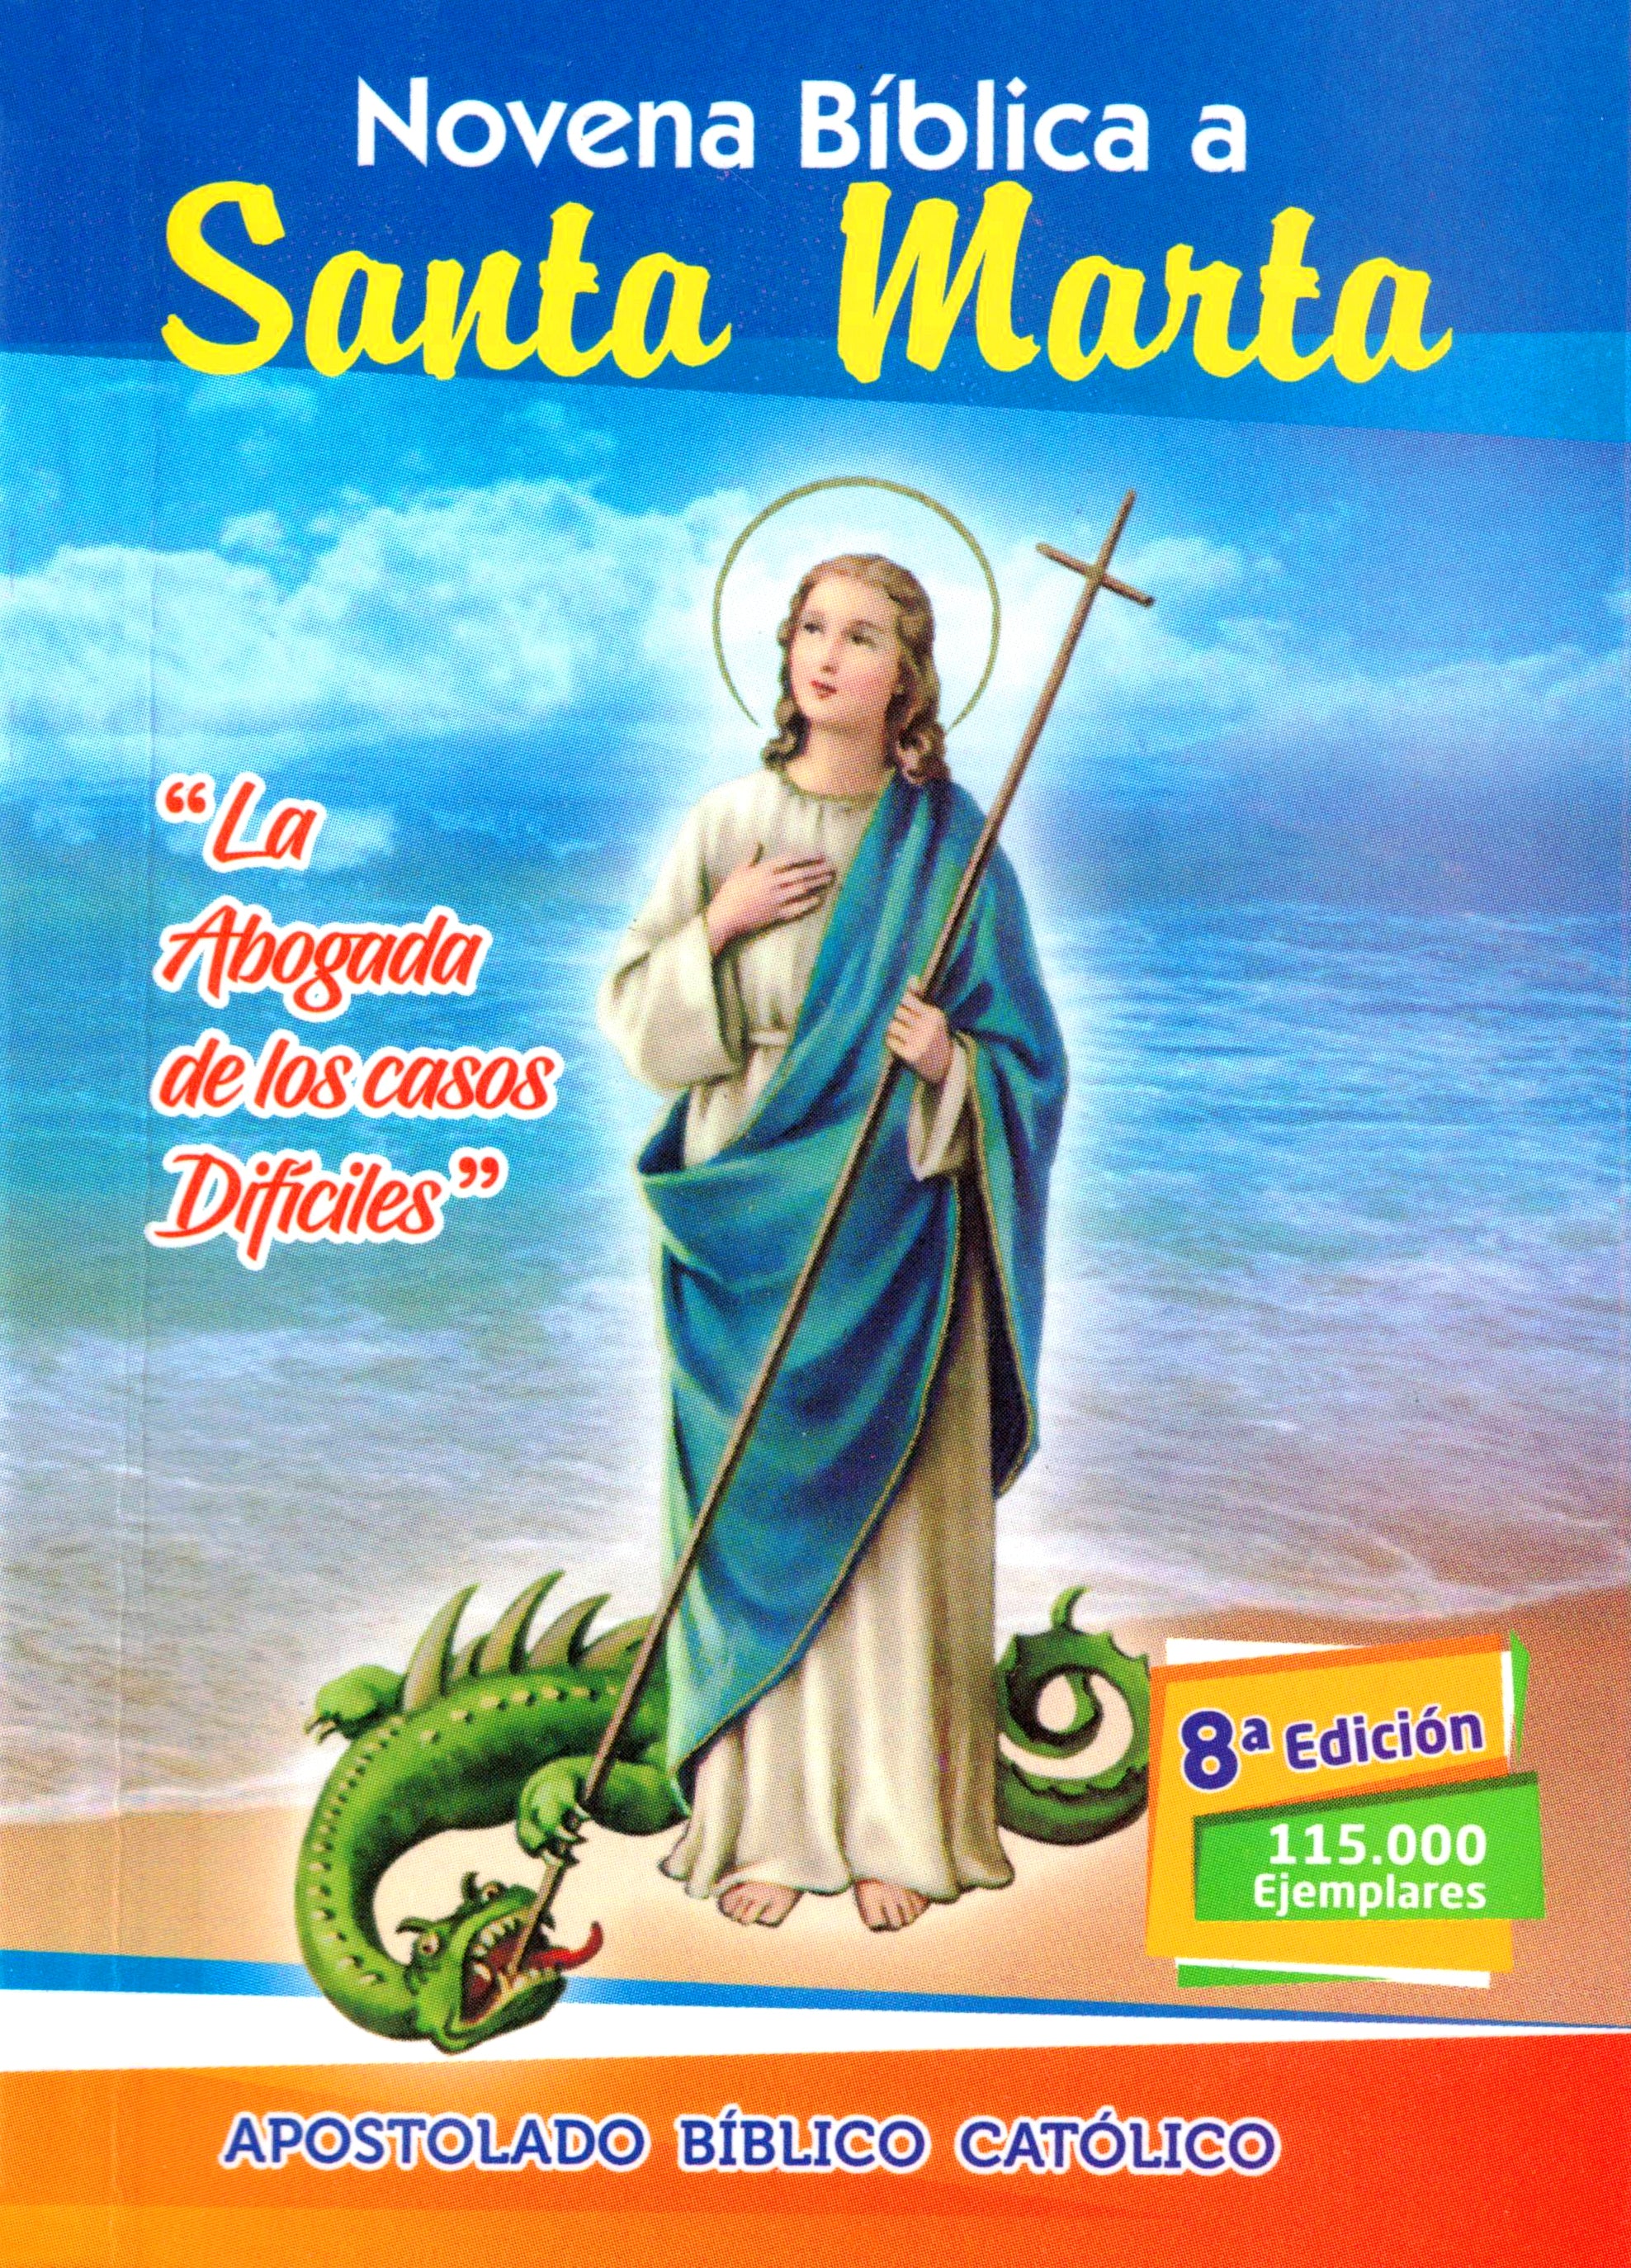 Novena Bíblica a Santa Marta